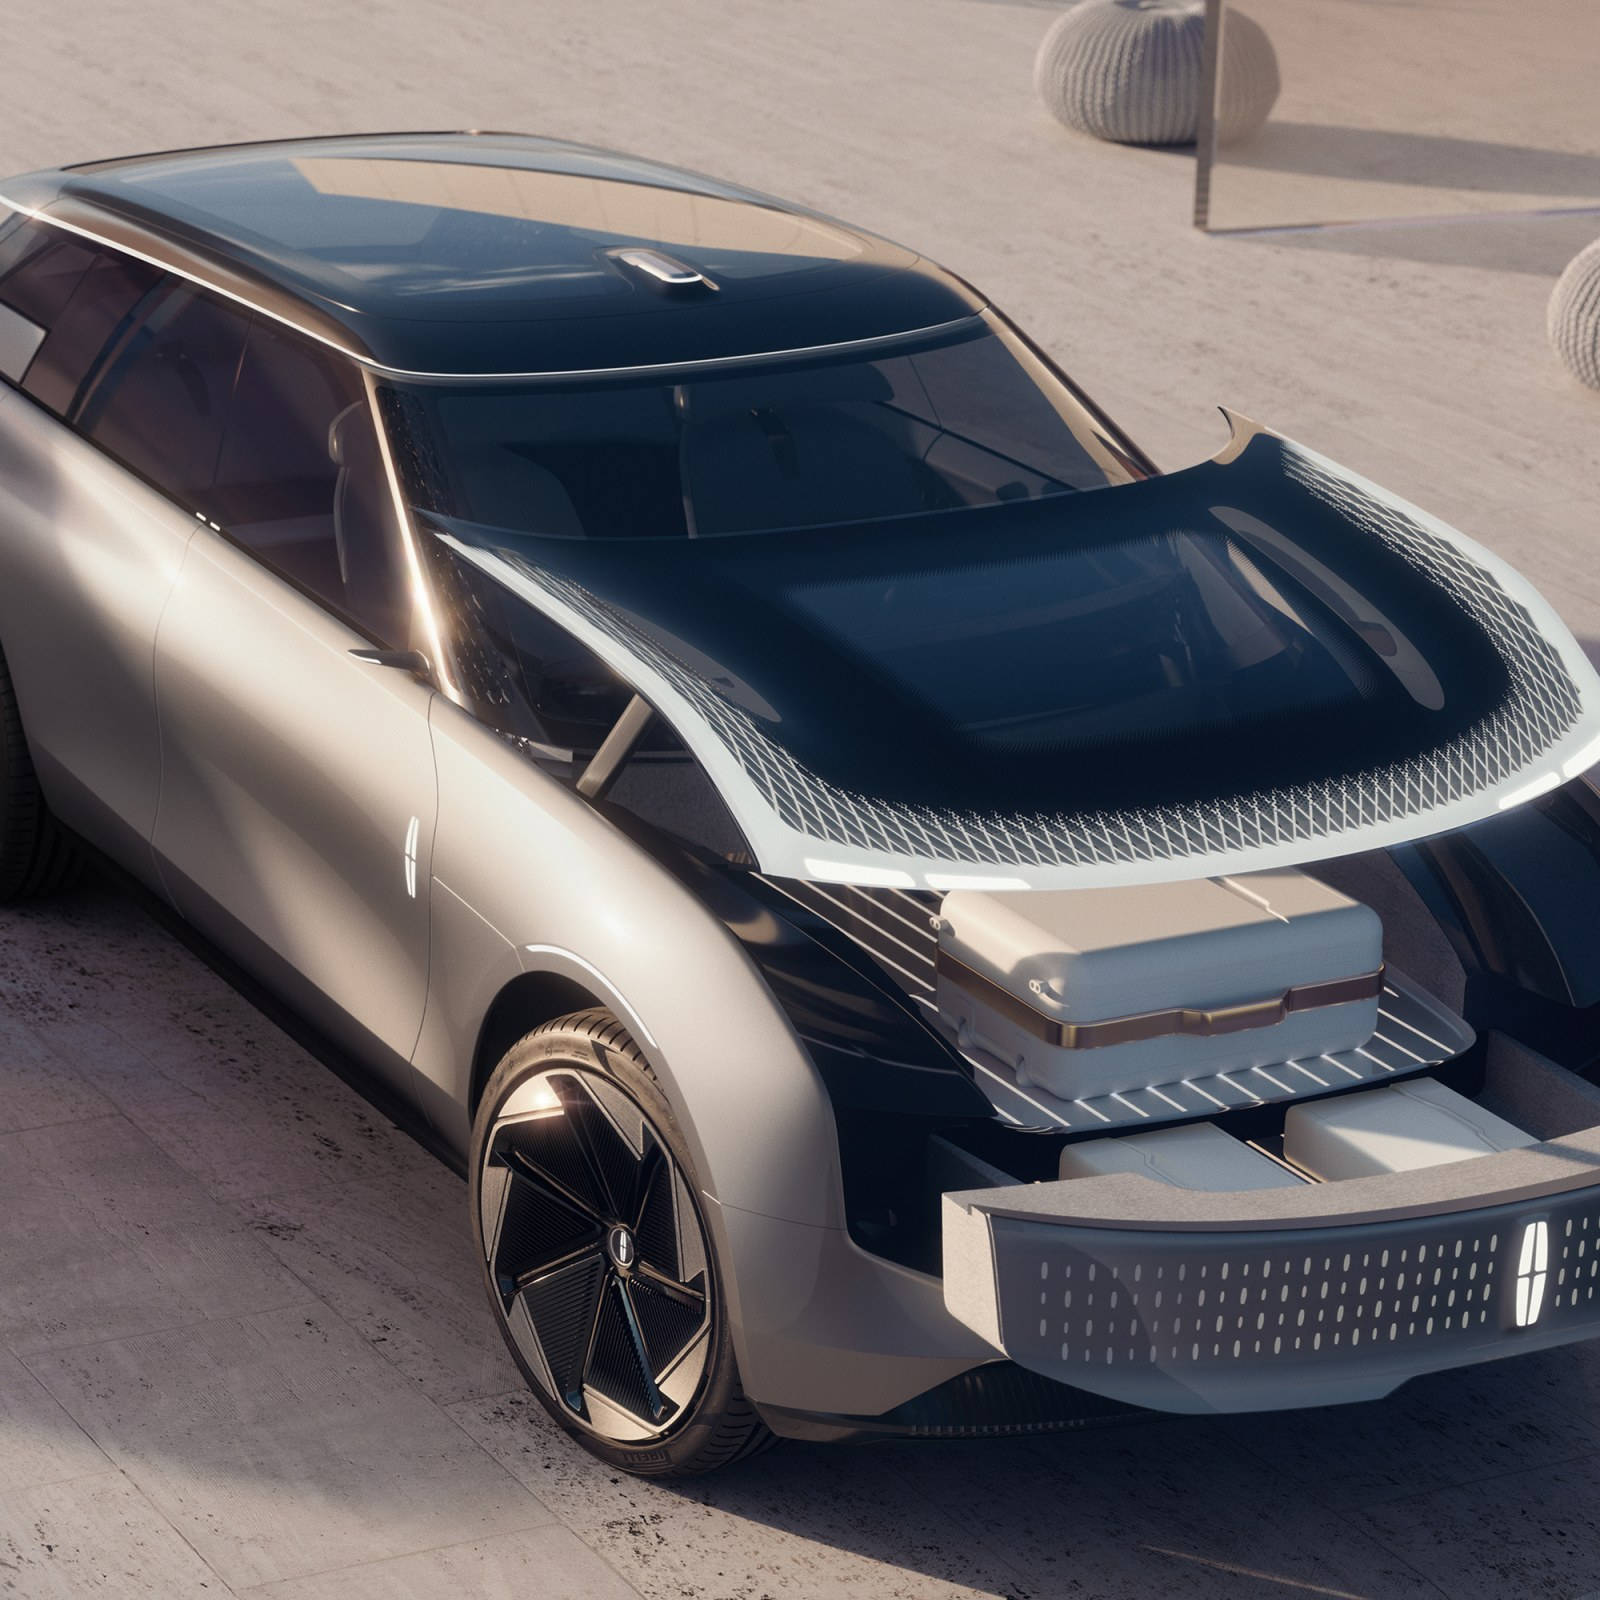 Concept Suv Lincoln Car Showcase Background